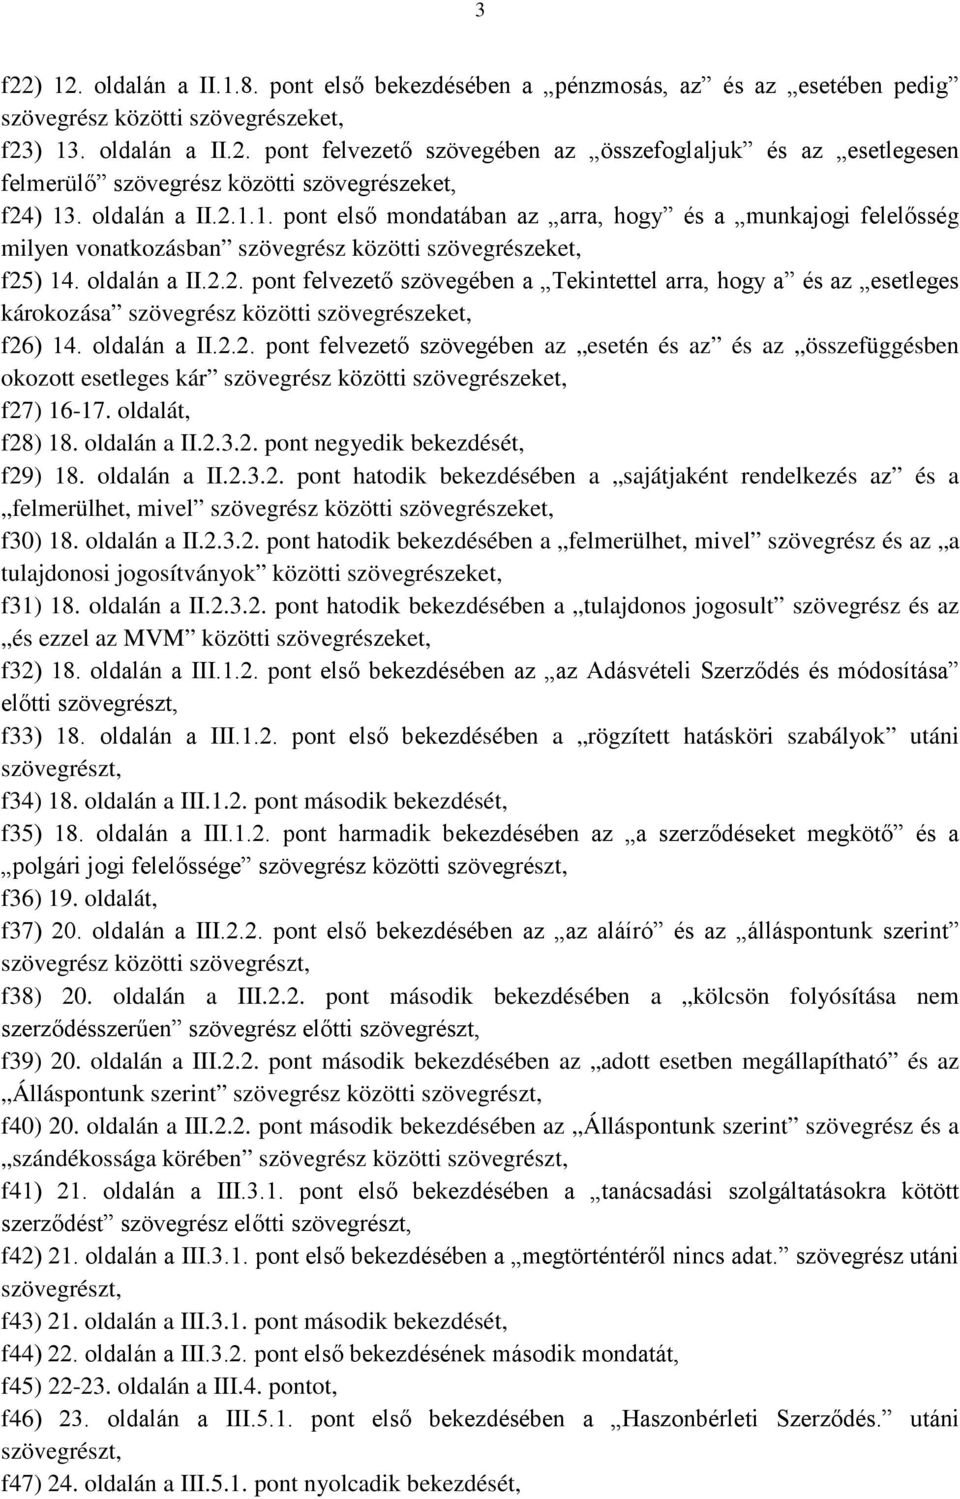 oldalán a II.2.2. pont felvezető szövegében az esetén és az és az összefüggésben okozott esetleges kár szövegrész közötti szövegrészeket, f27) 16-17. oldalát, f28) 18. oldalán a II.2.3.2. pont negyedik bekezdését, f29) 18.